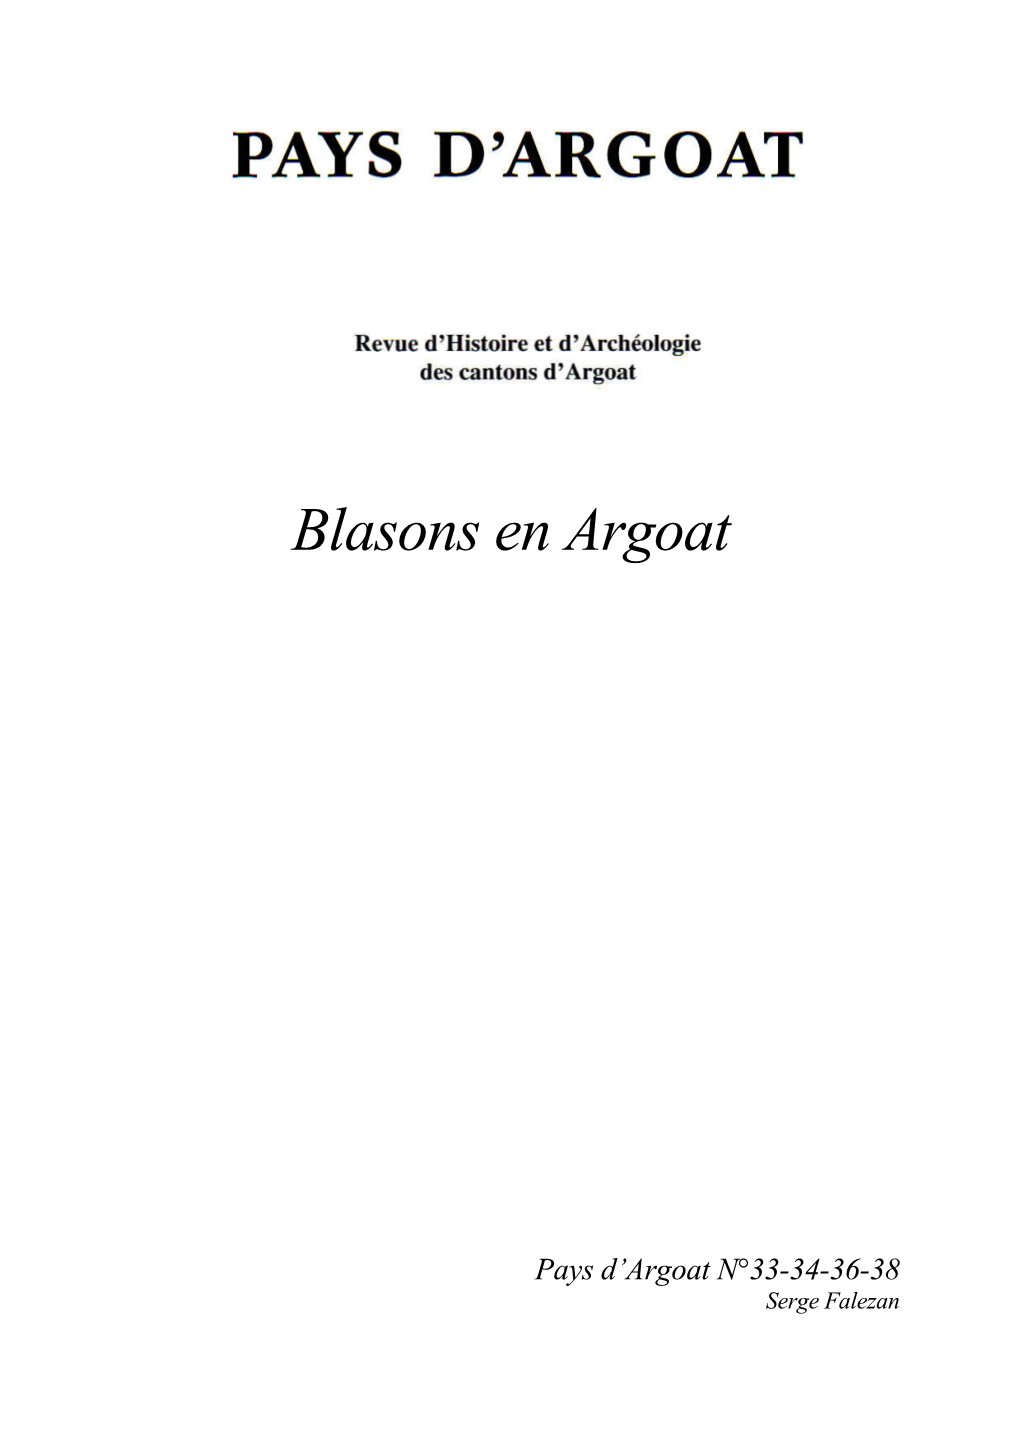 Blasons En Argoat